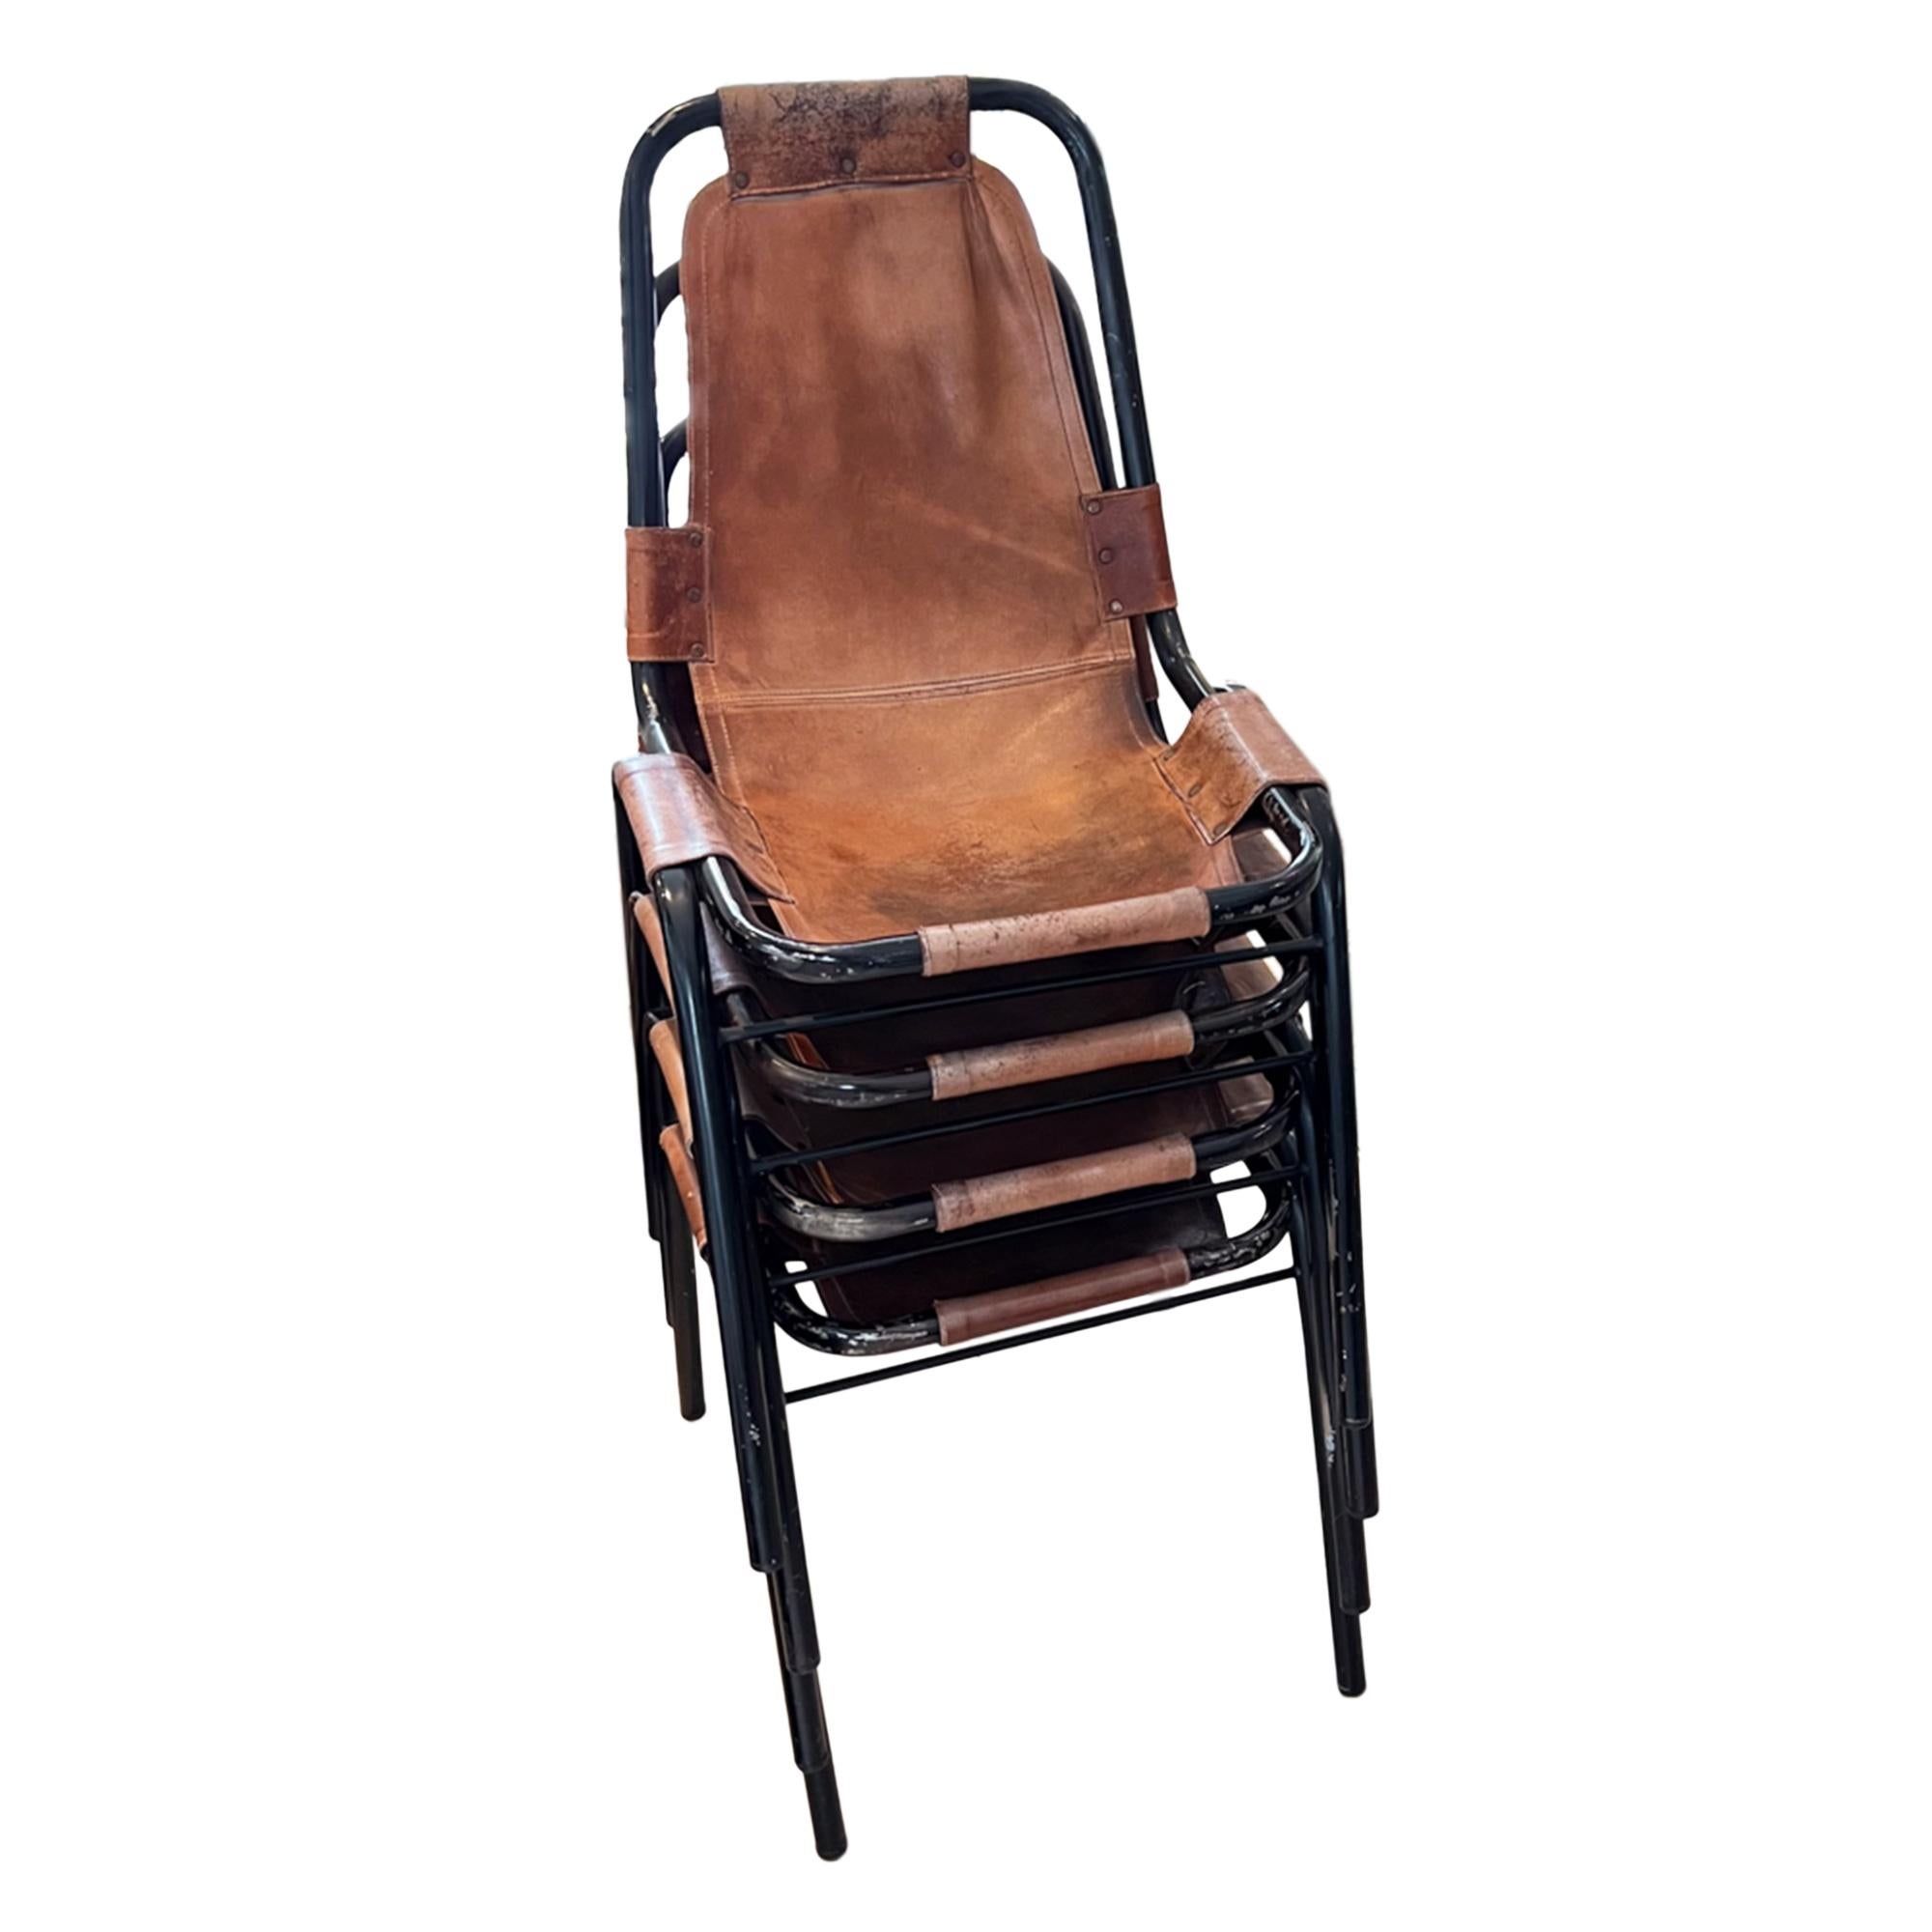 Il s'agit d'un superbe ensemble de chaises empilables - le style a été choisi par l'architecte et designer française Charlotte Perriand dans les années 1960 pour la station de ski alpine des Arcs. 
Ils sont dans le style de DalVera.

Fabriquées en